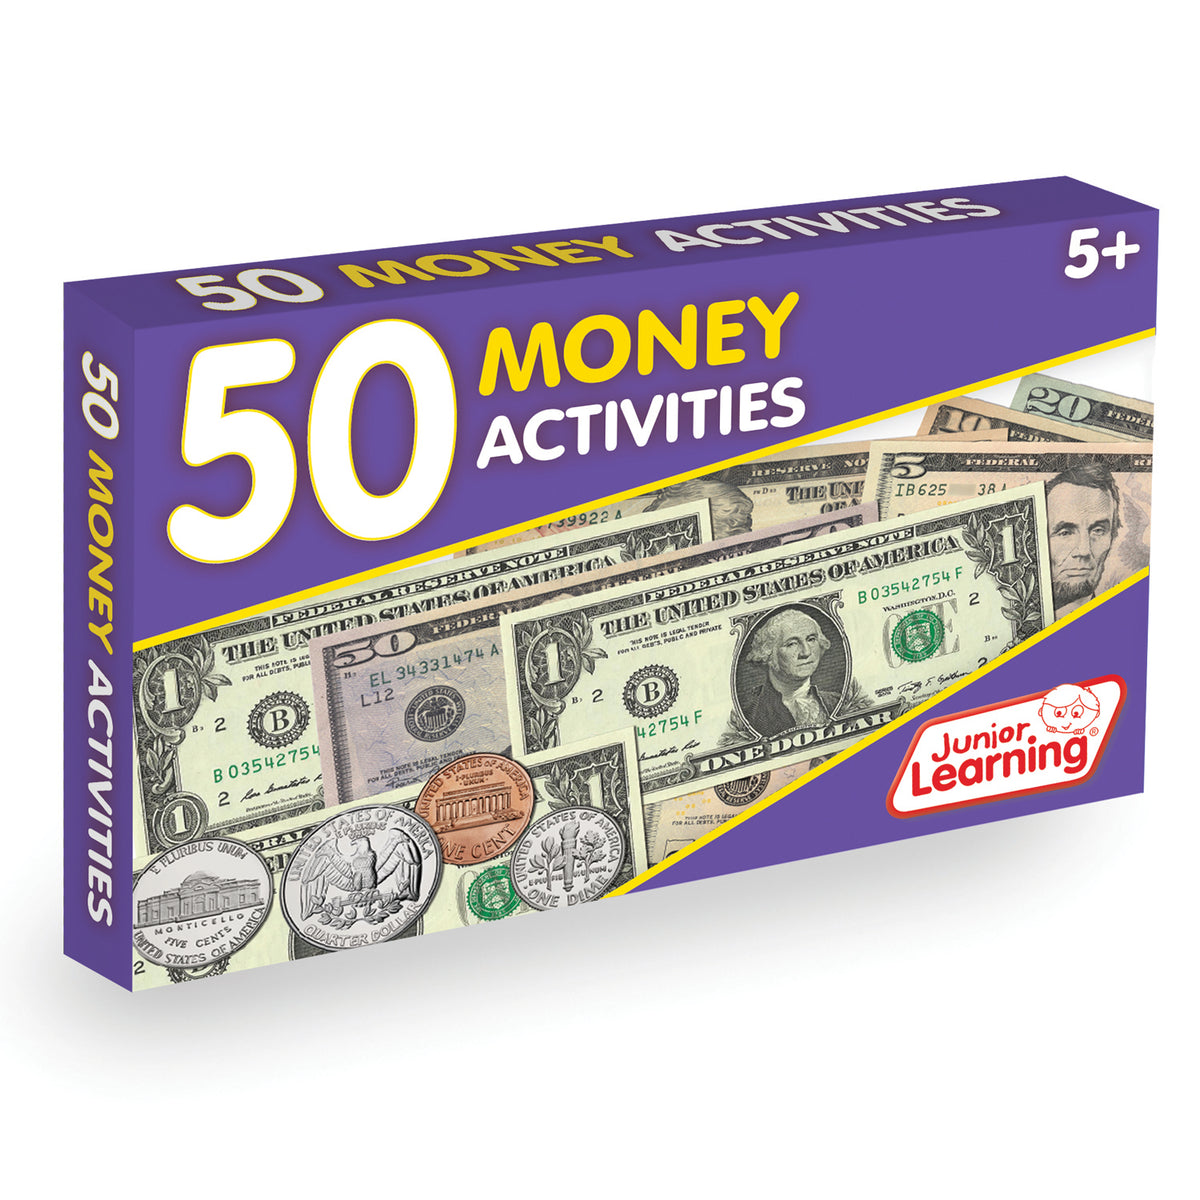 50 Money Activities